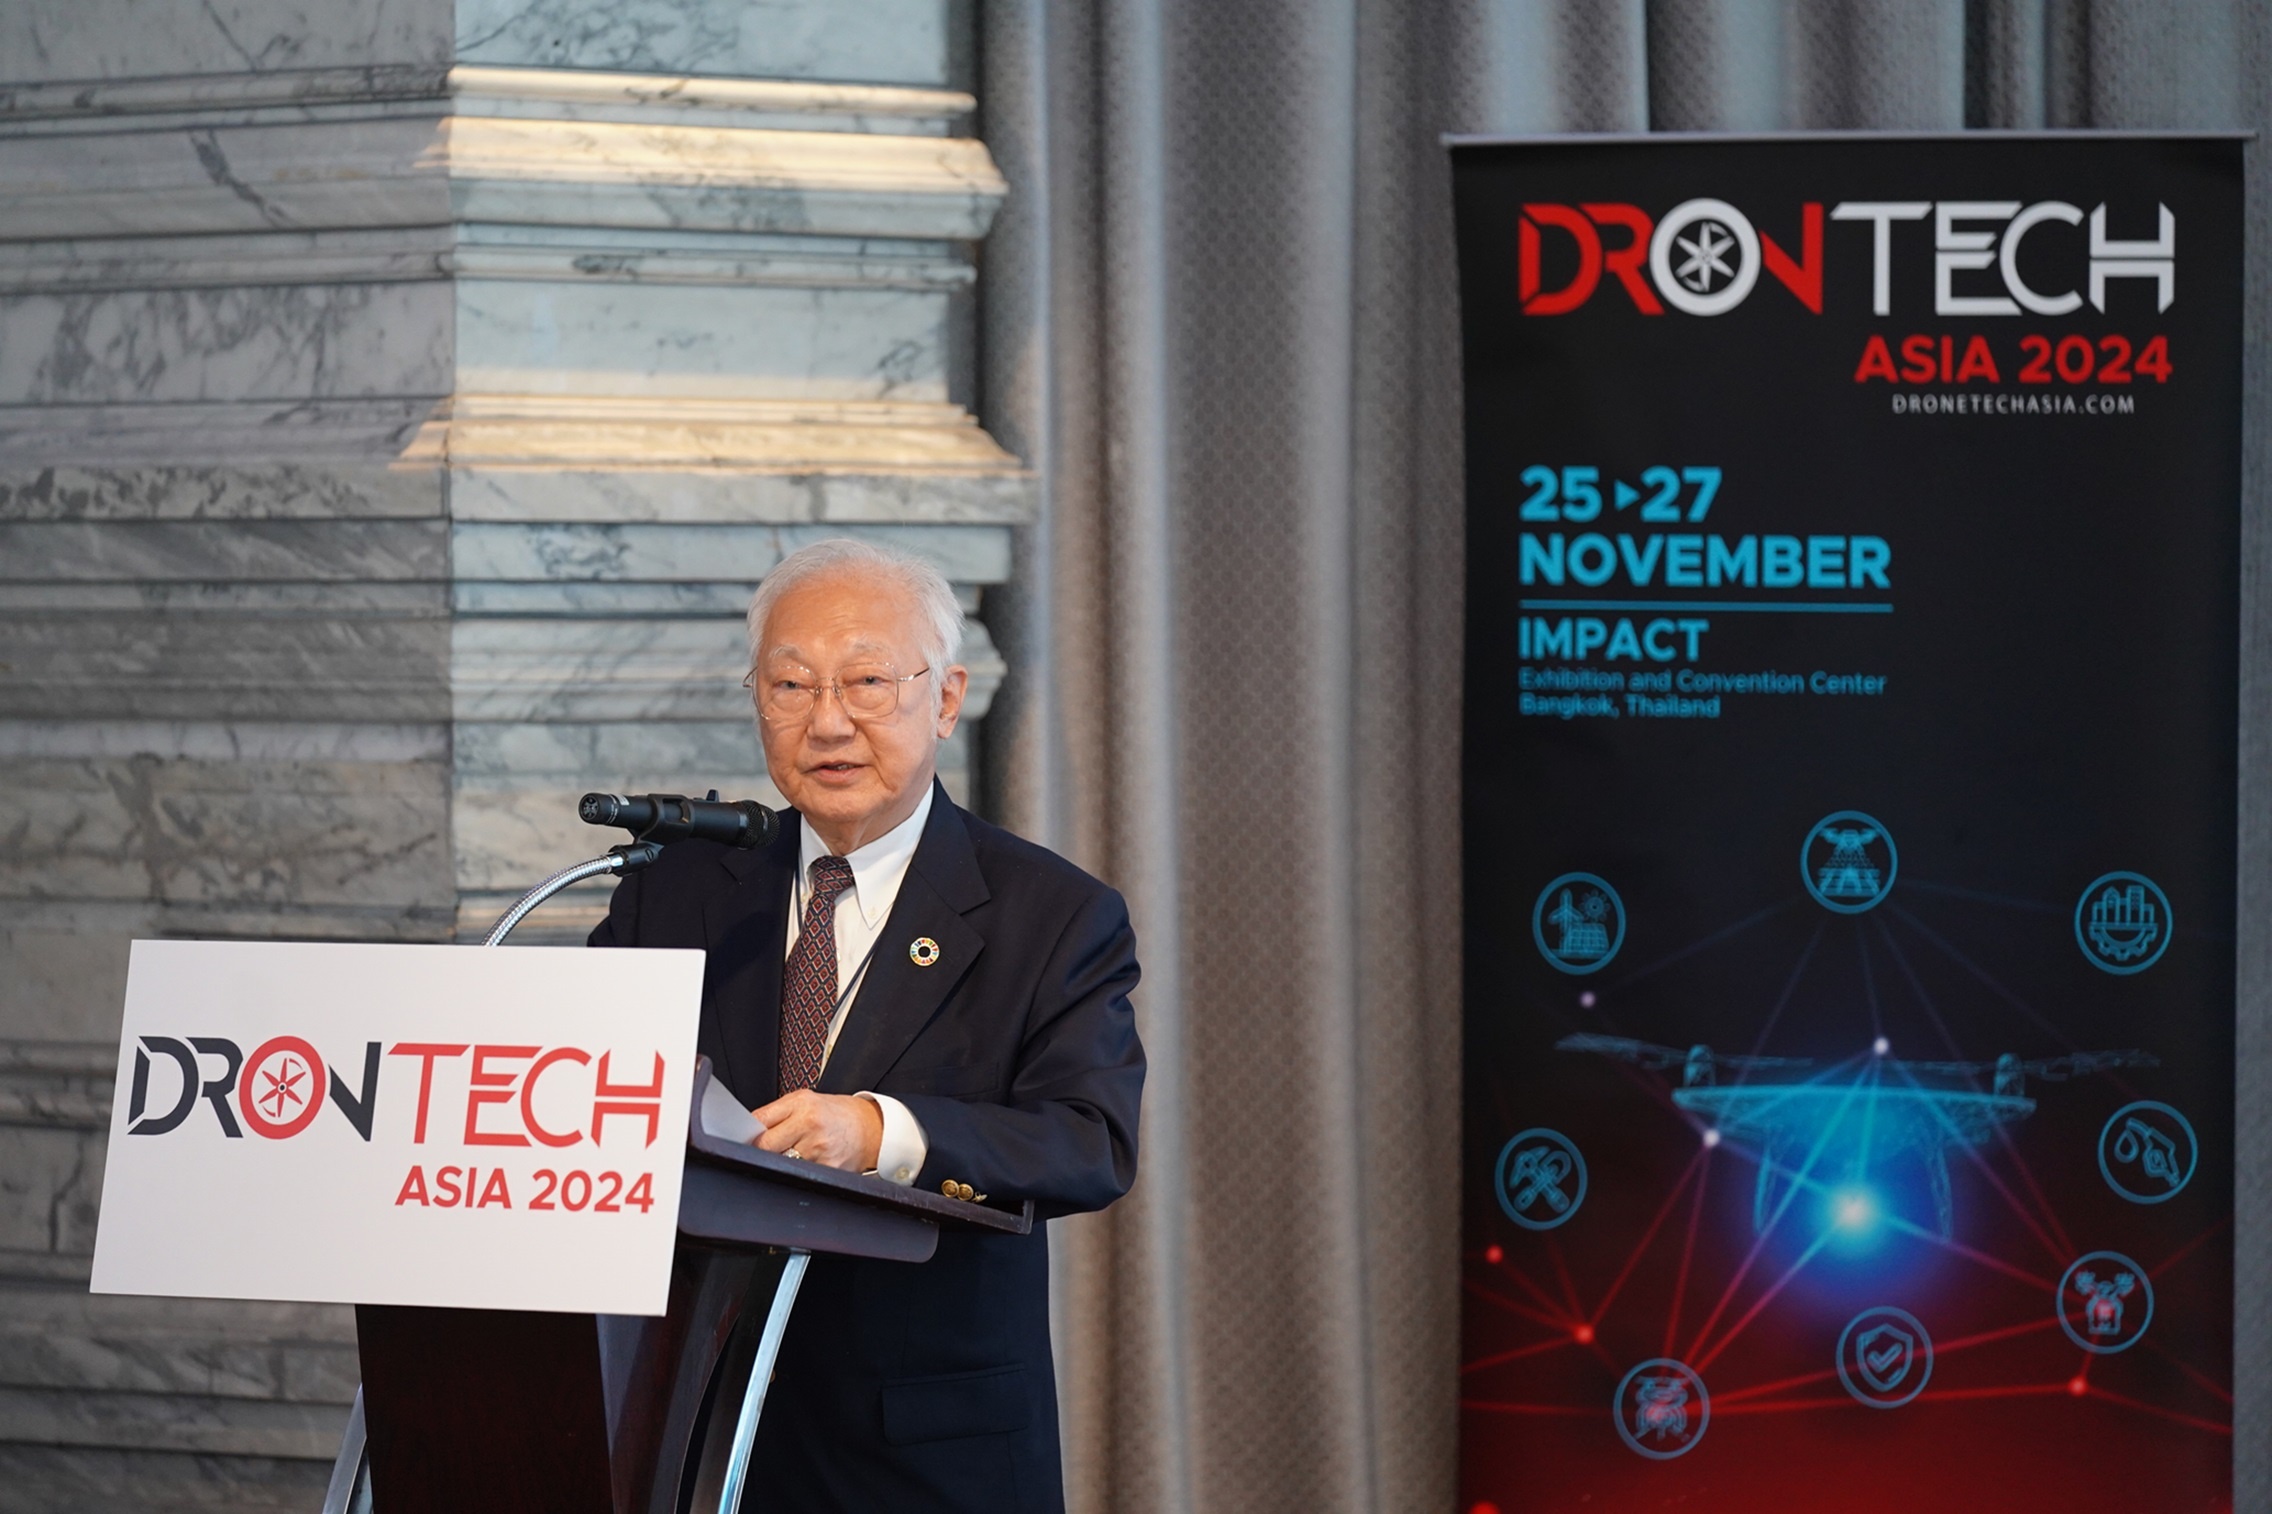 จีเอ็มแอล เอ็กซิบิชั่น จัดงาน DronTech Asia 2024 โชว์ศักยภาพและความก้าวหน้าอุตสาหกรรมโดรนในประเทศไทย